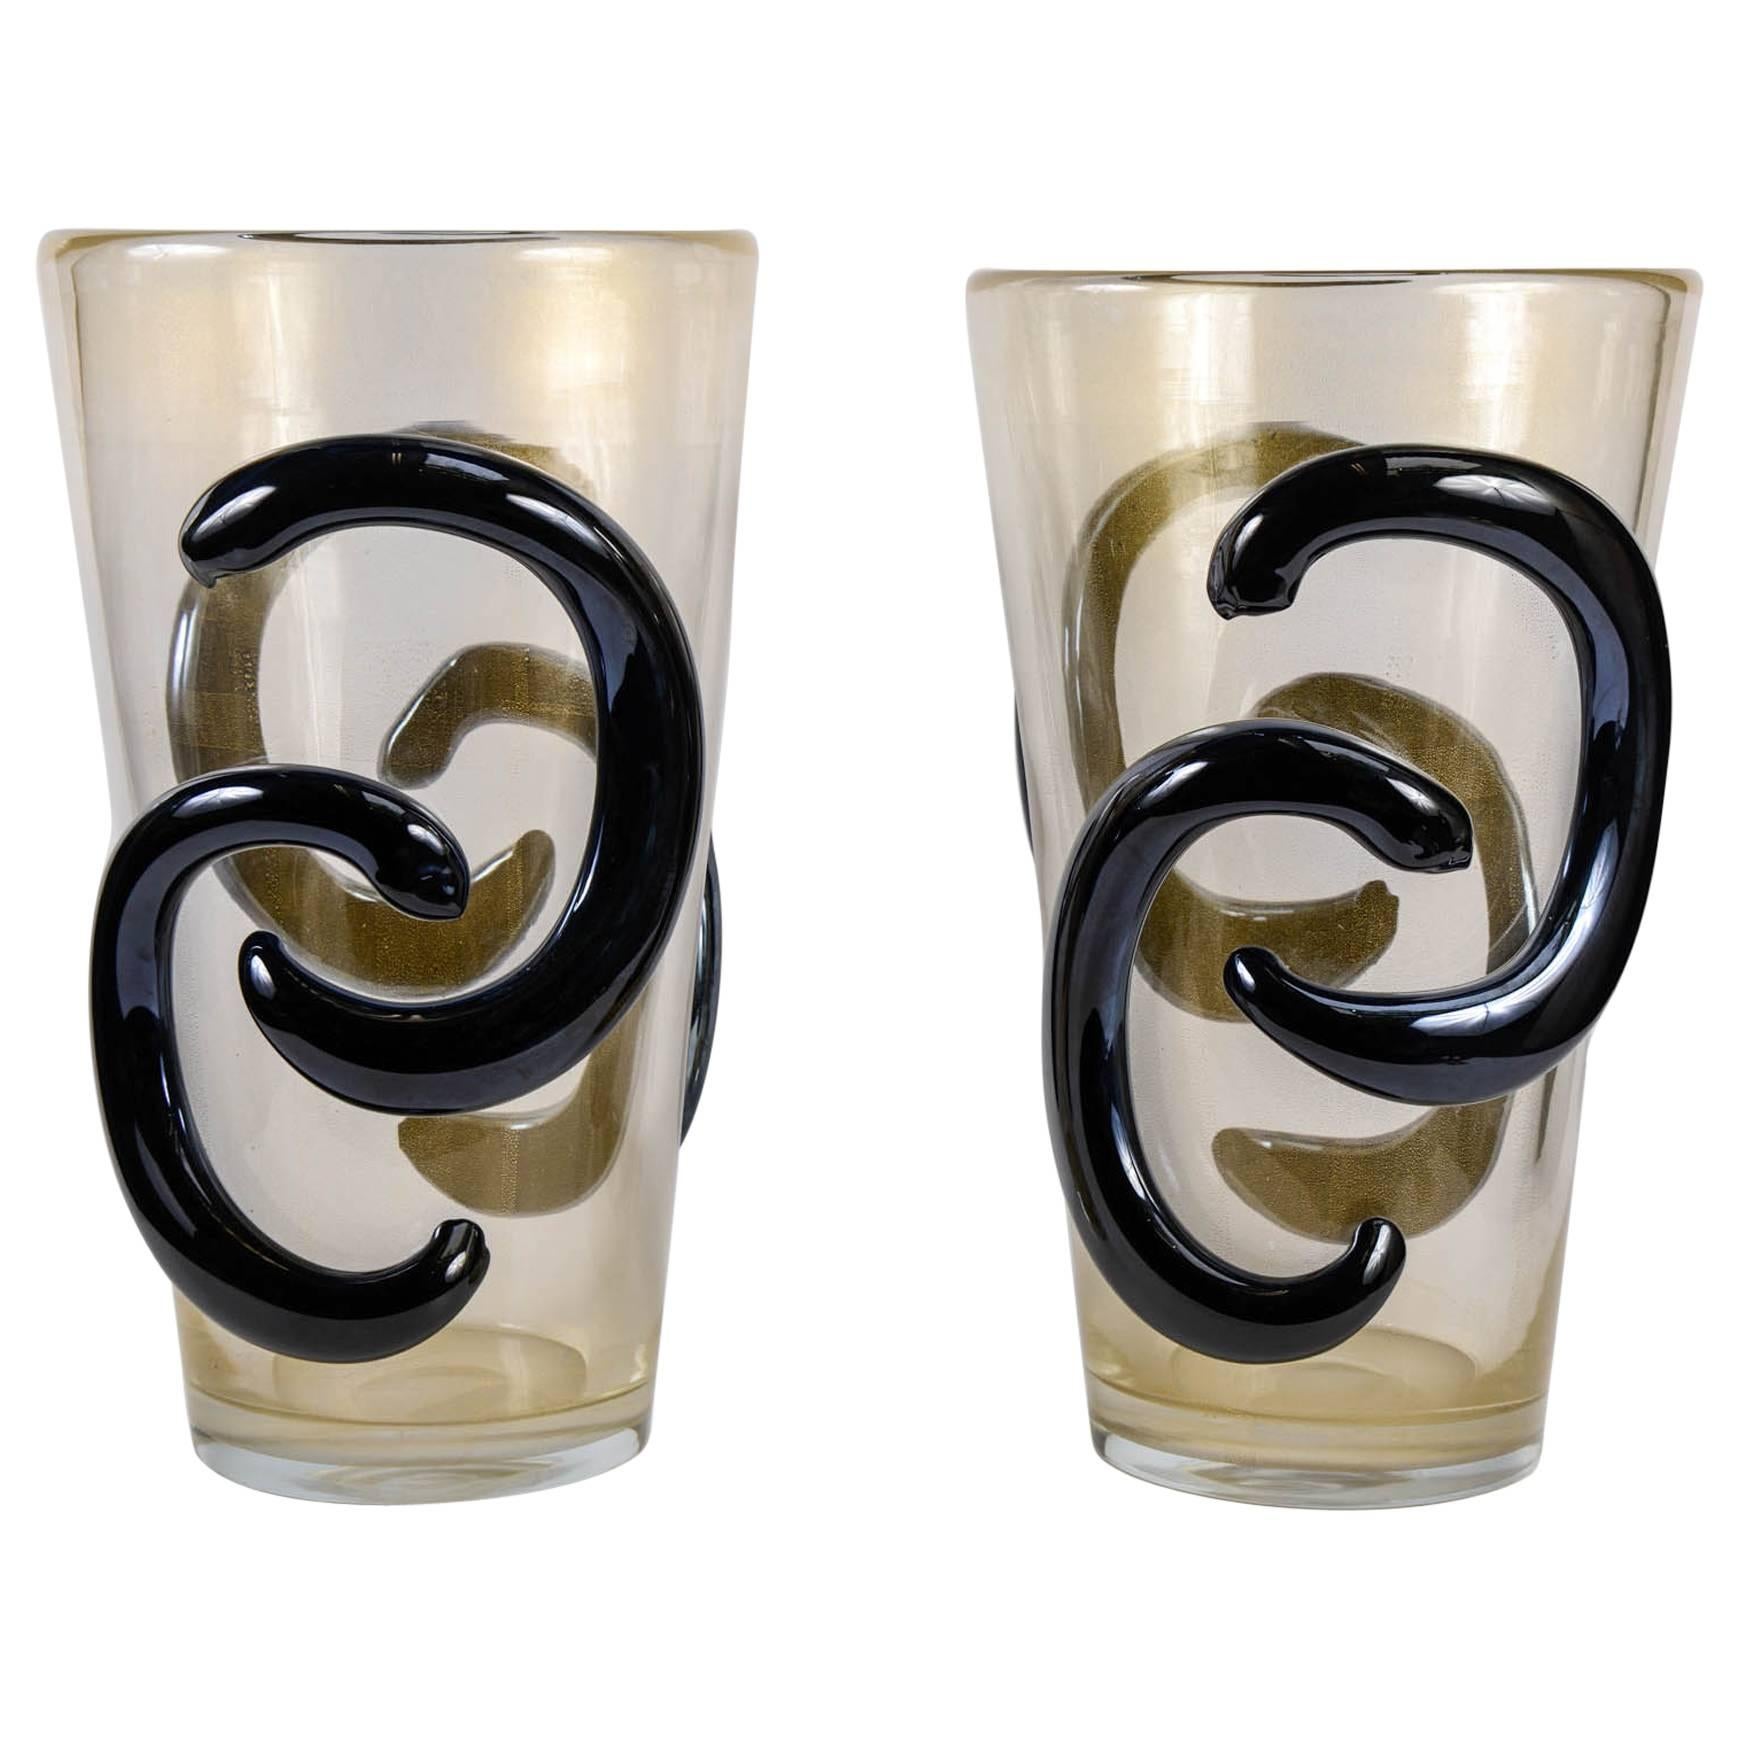 Pair of Vases in Murano Glass